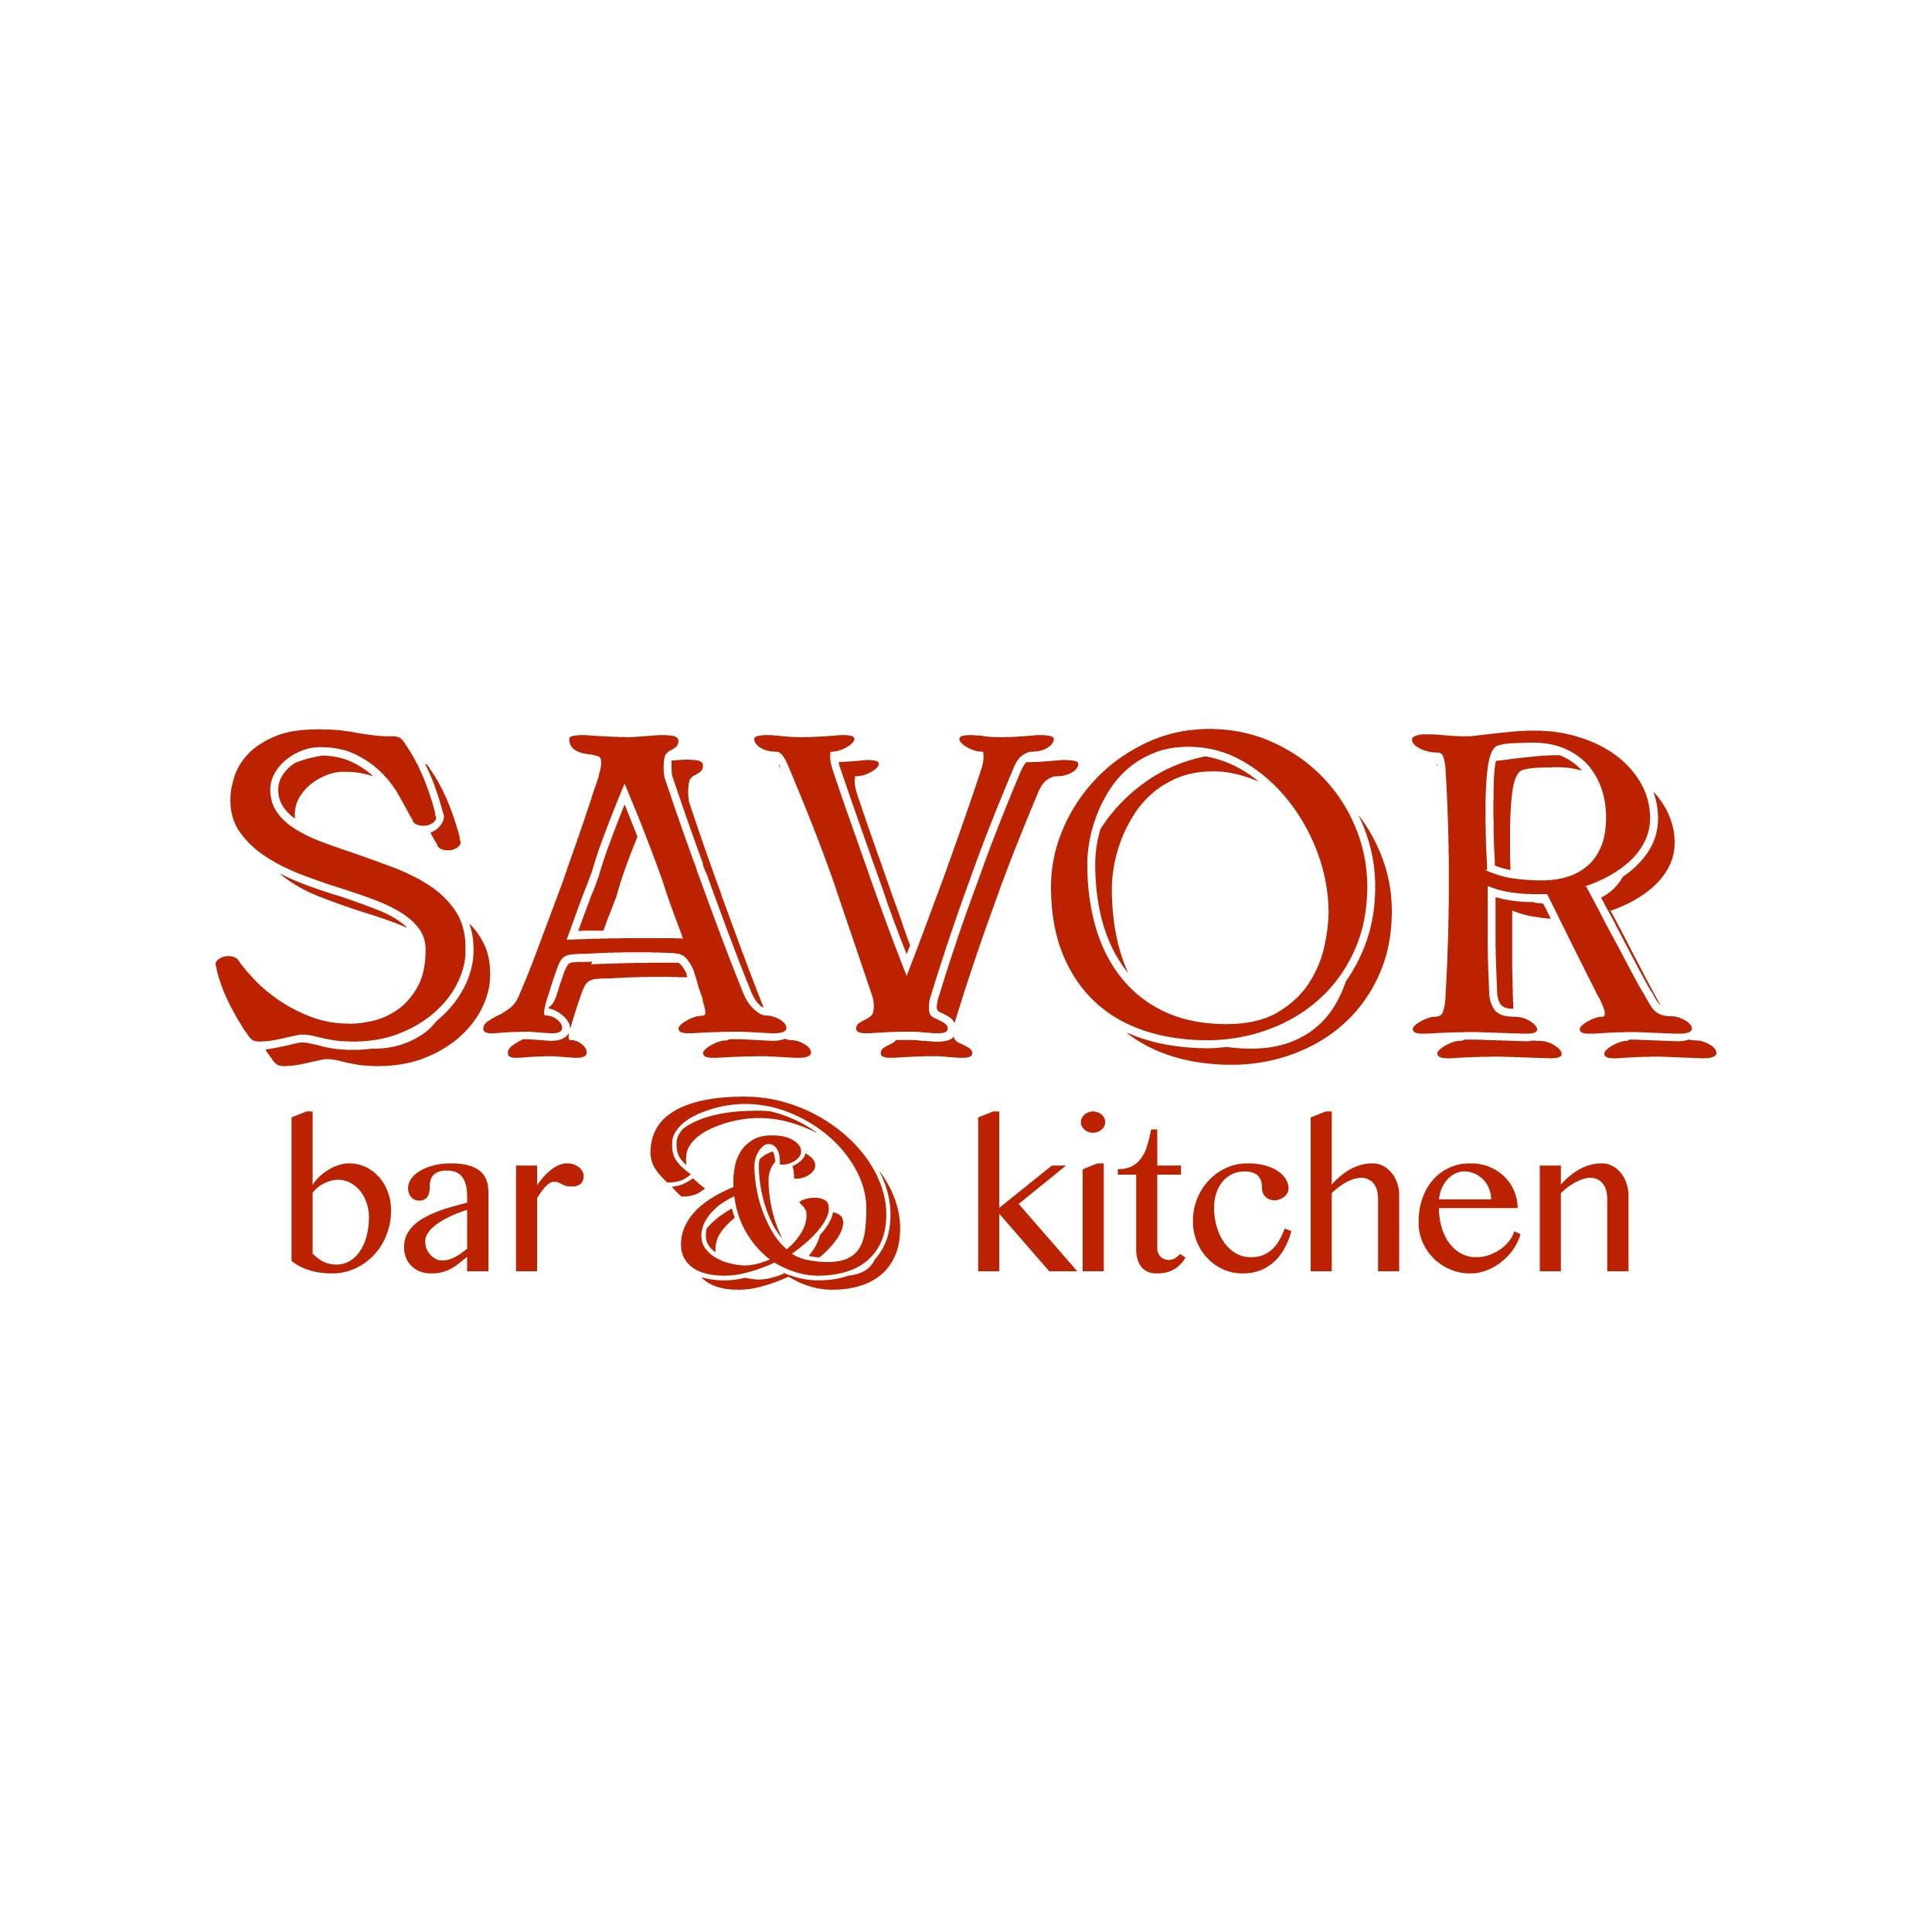 Savor bar & kitchen